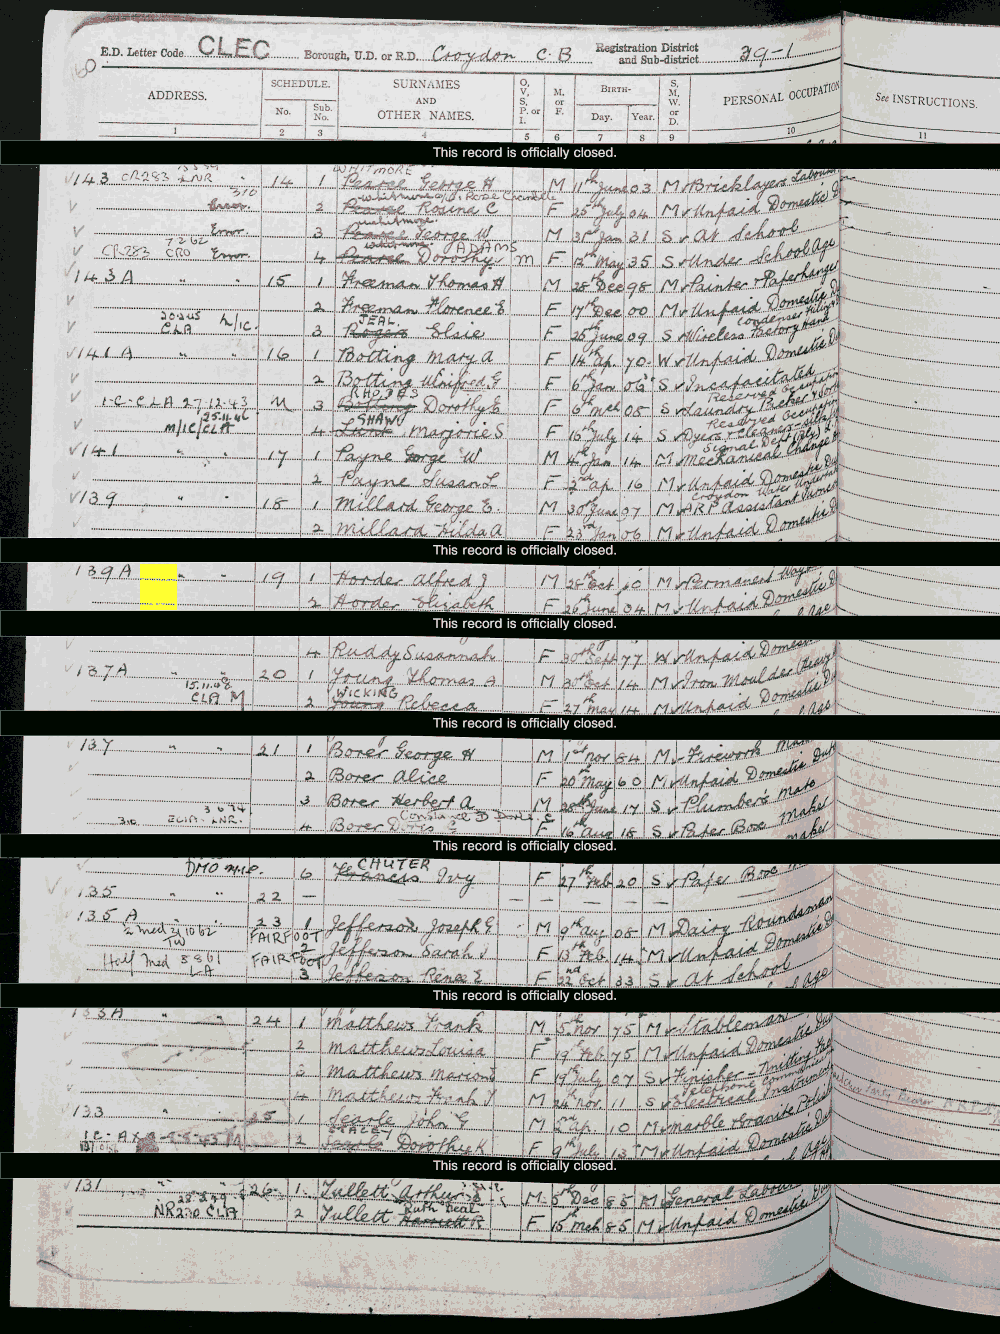 1939 census returns for Alfred and Elizabeth Horder